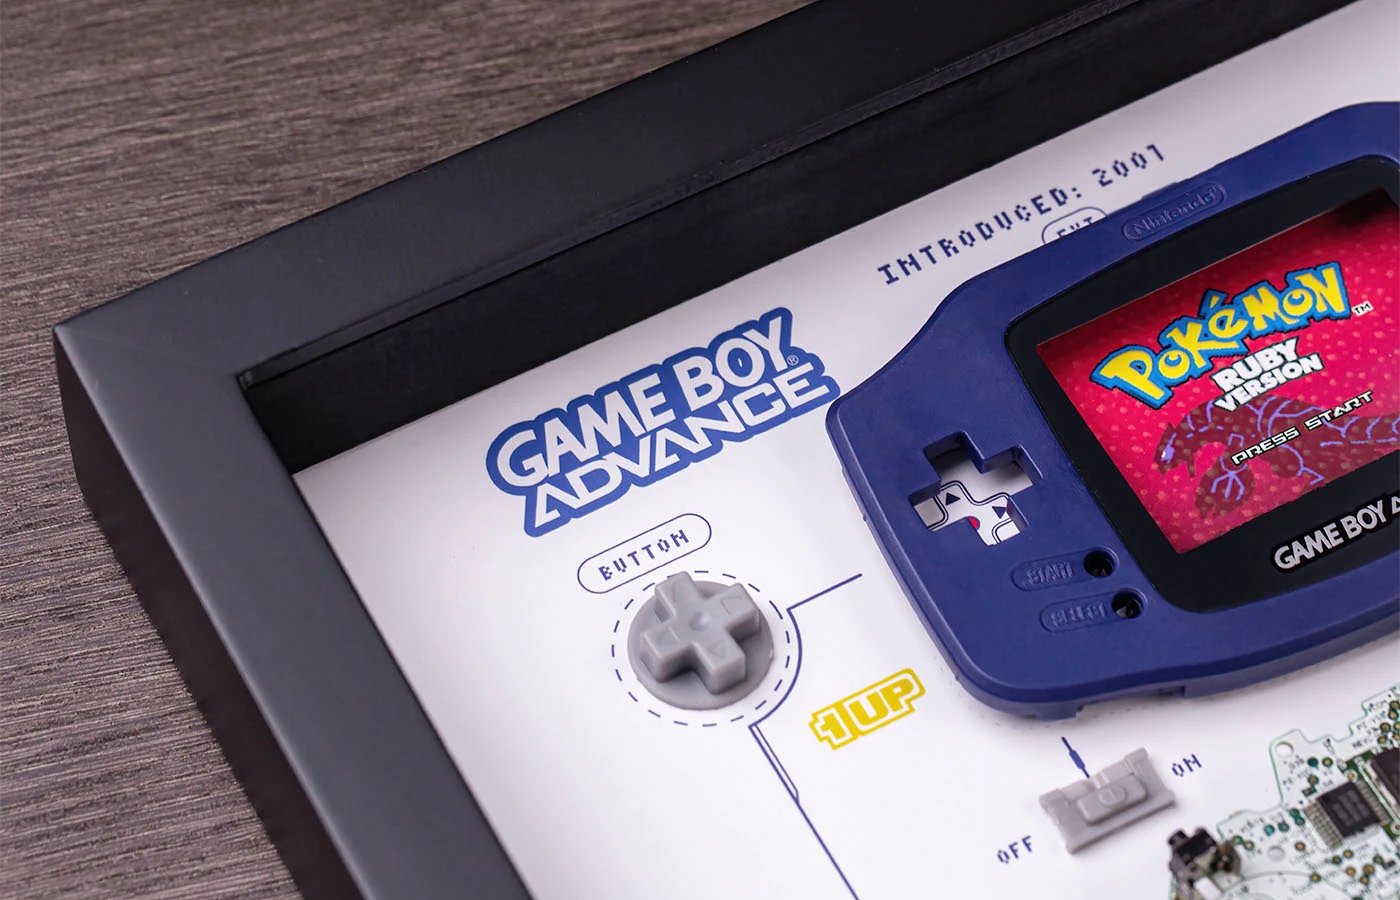 GRID® Game Boy Color